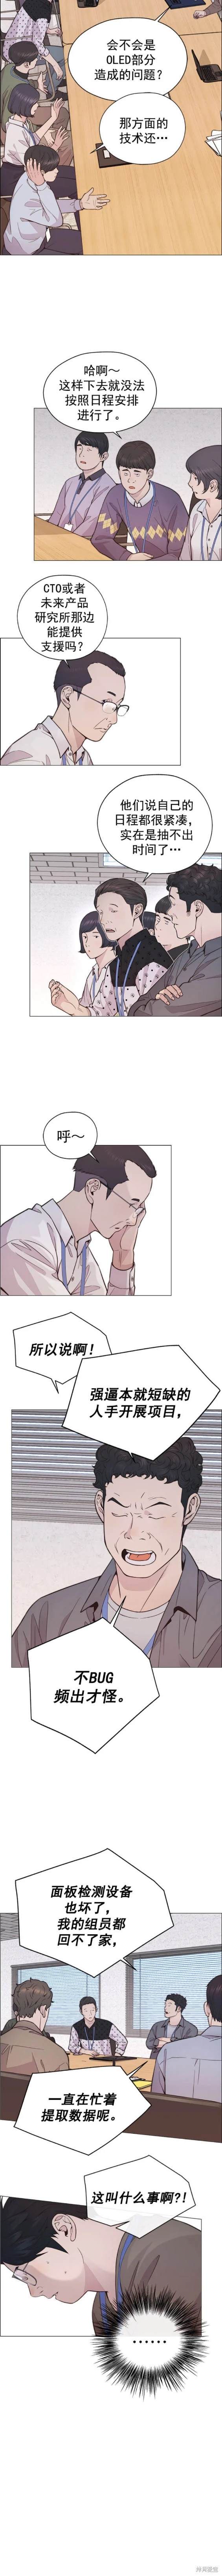 男子汉漫画,第167话6图